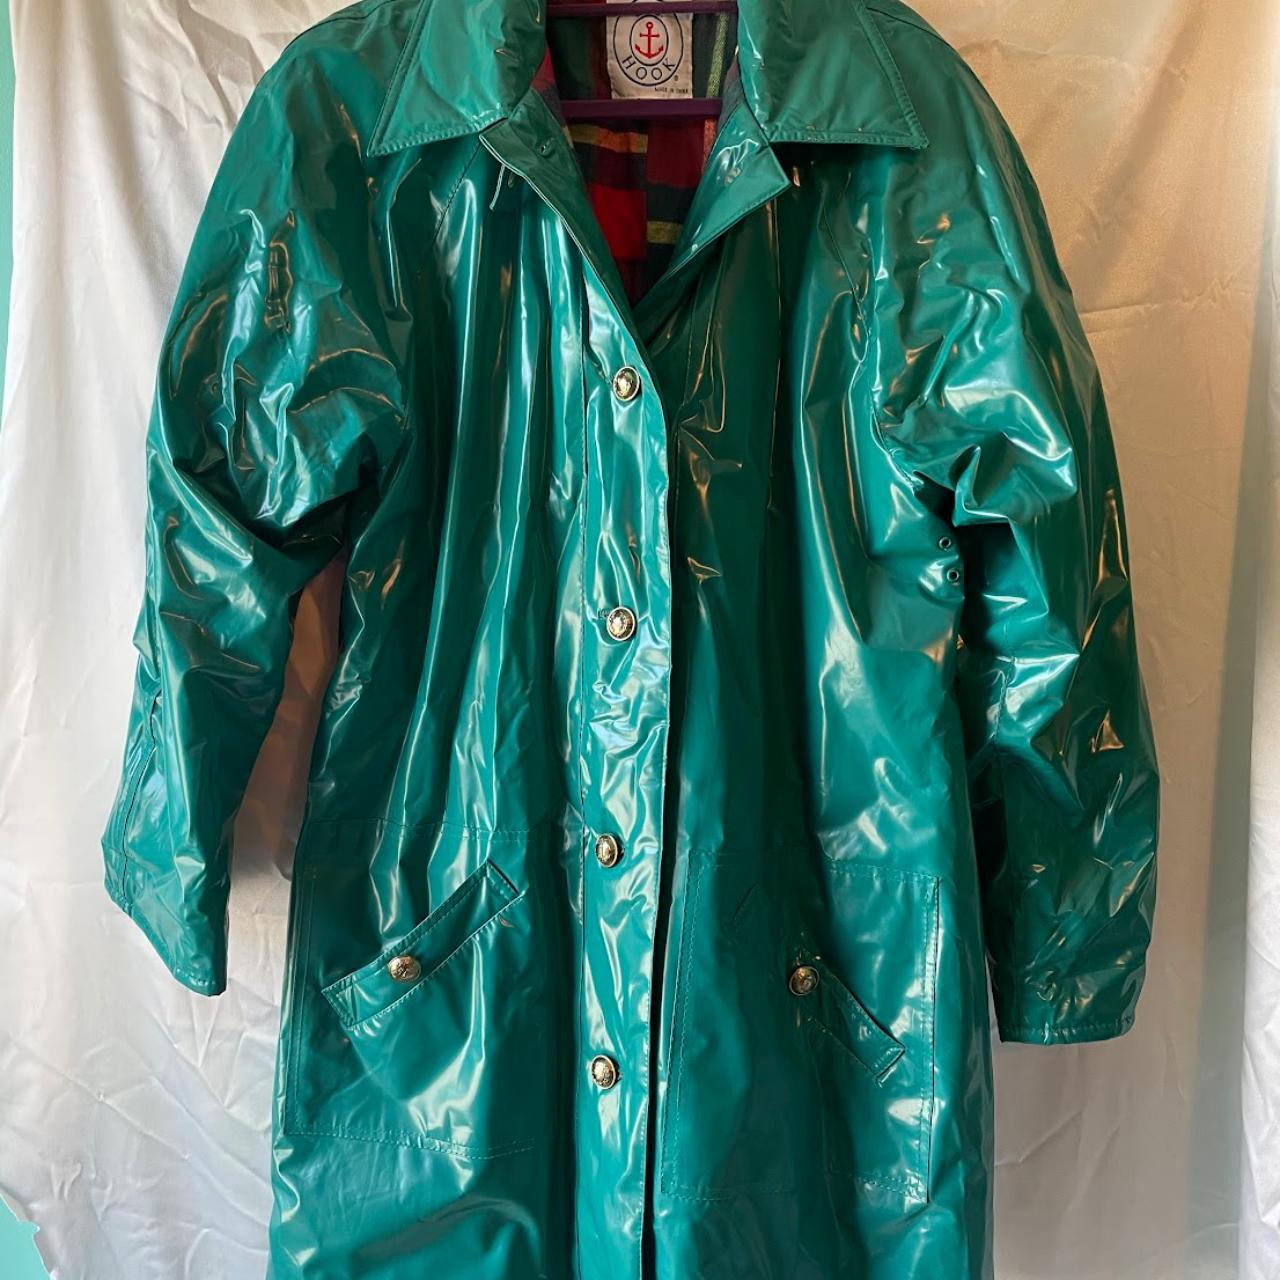 Vintage Teal Raincoat 💙 Info: - Length (34... - Depop